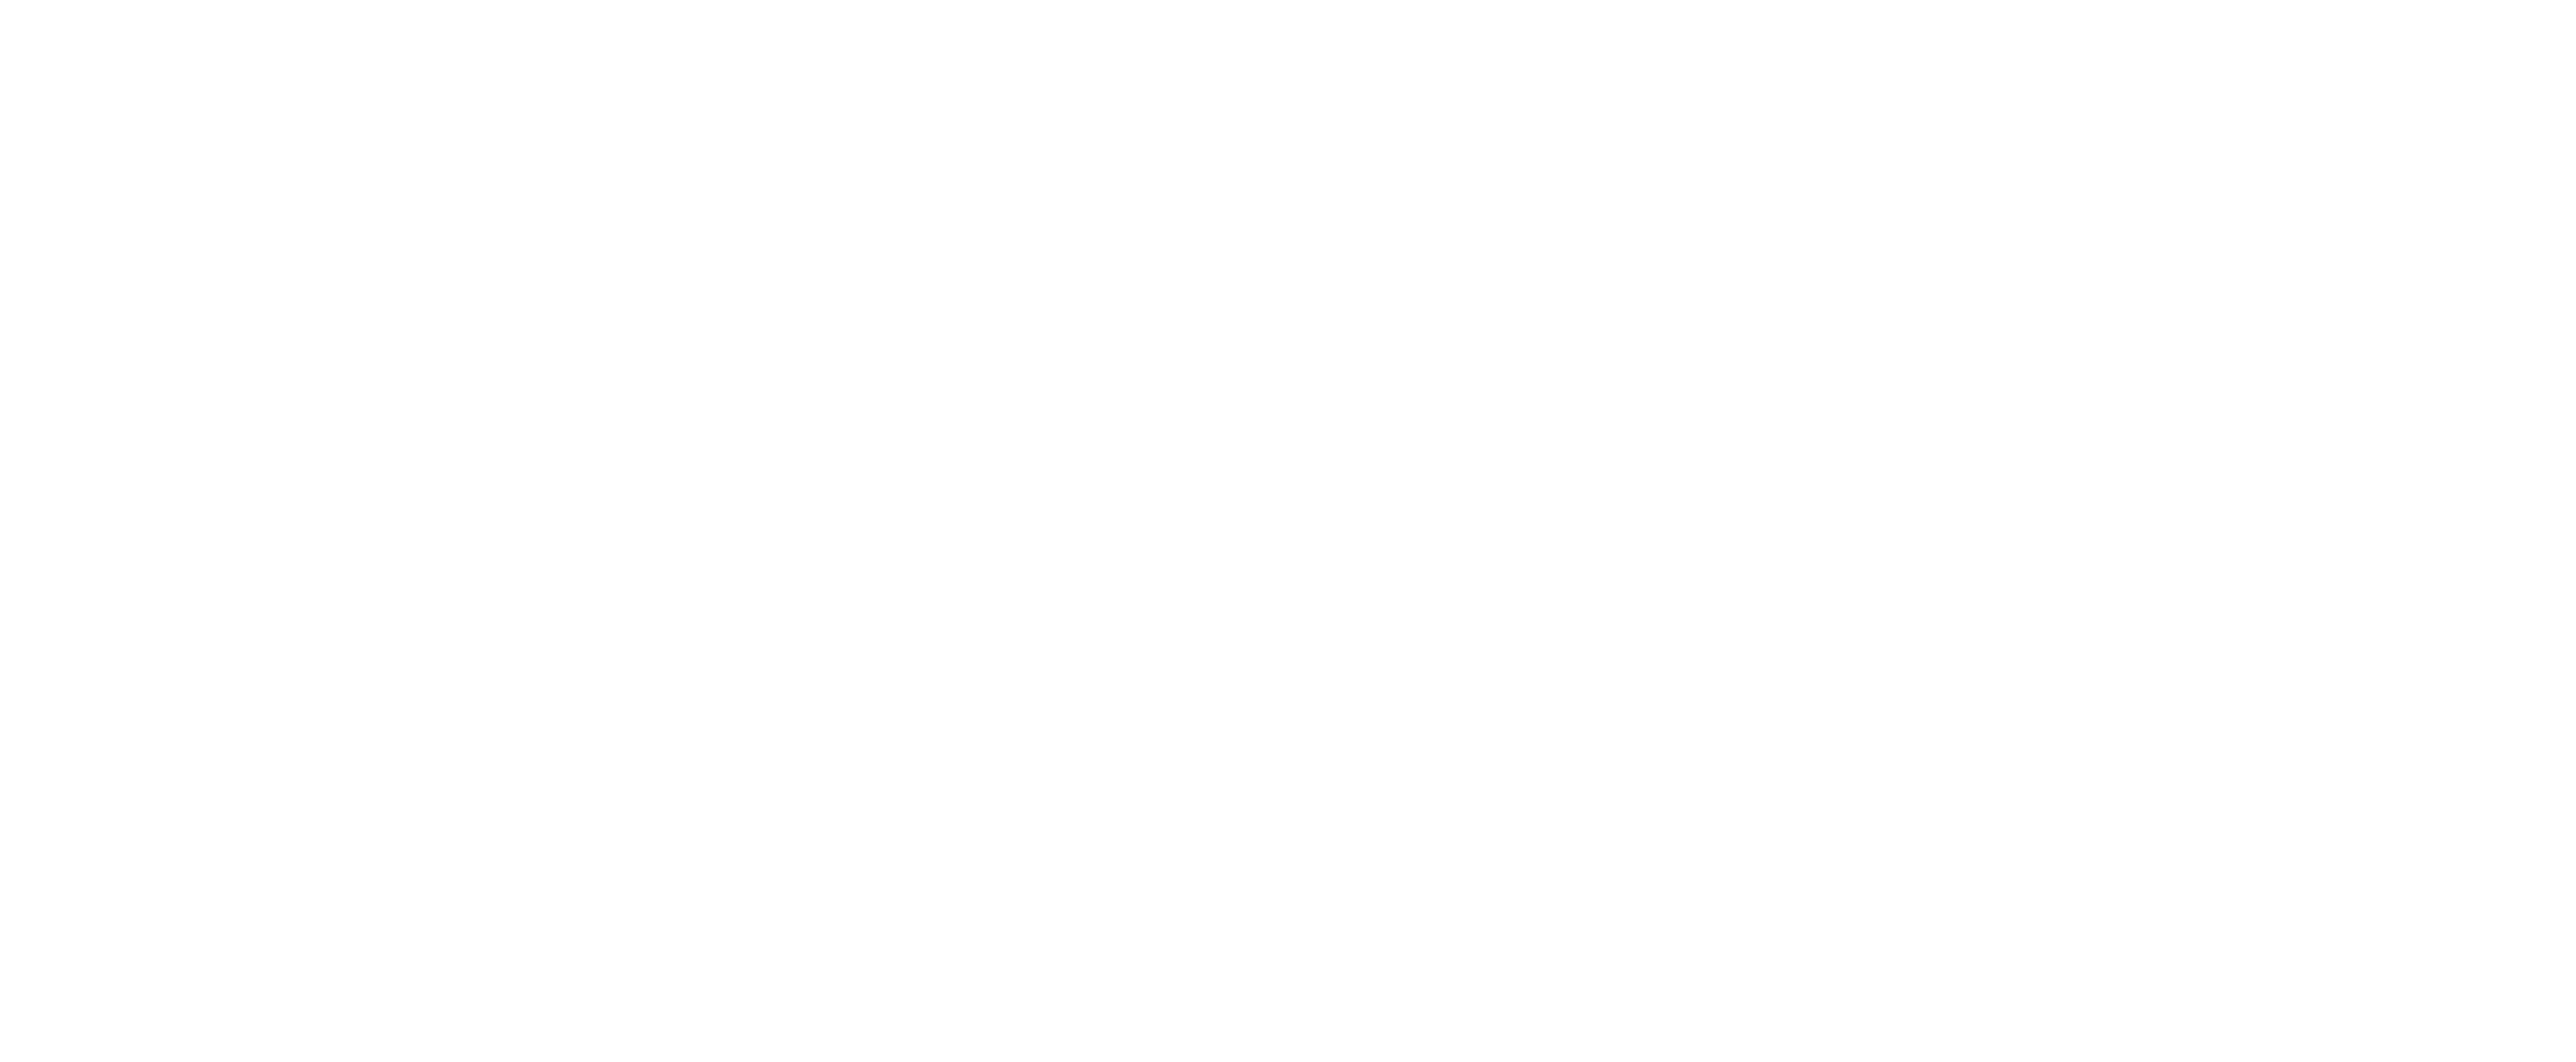 J.T. McDermott Remodeling Contractors, L.L.C. Logo